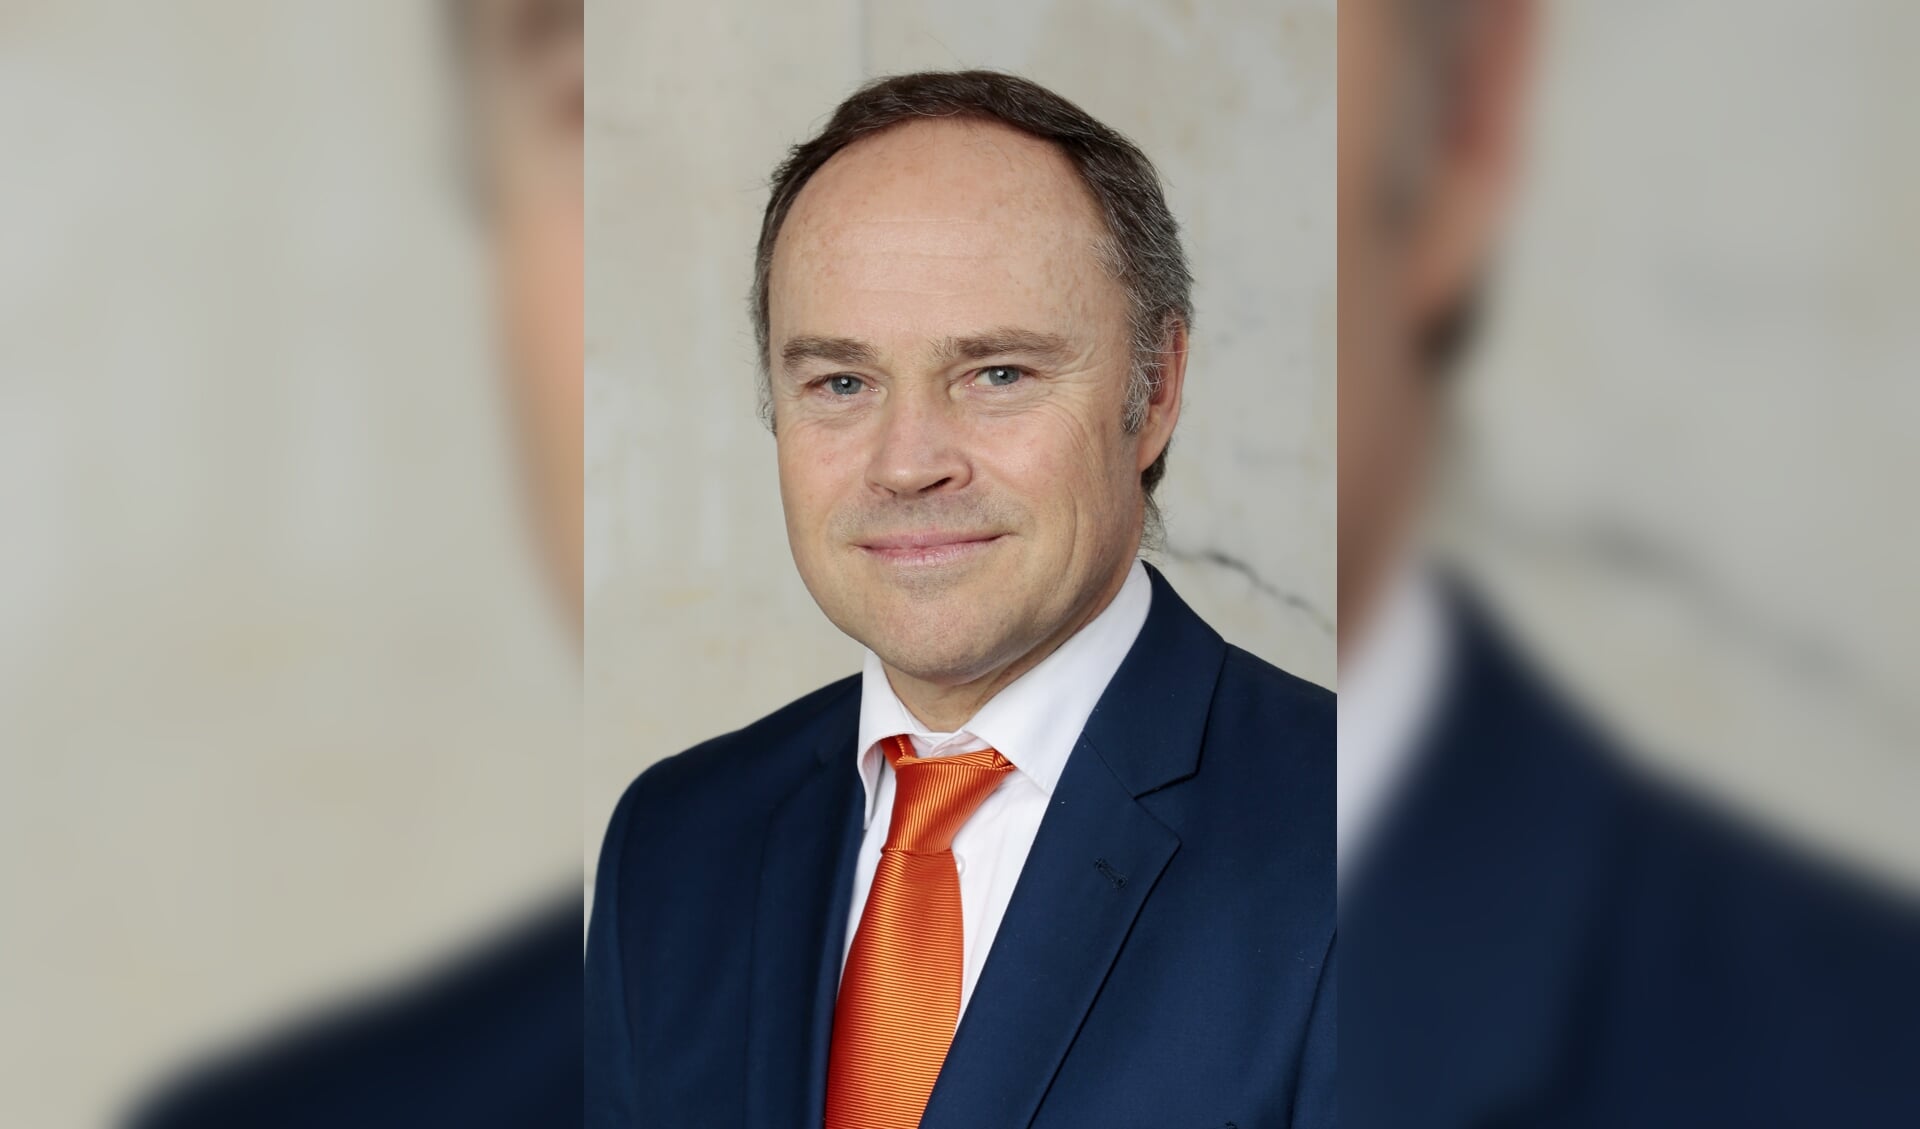 VVD-raadslid Ruud Verkuijlen schreef een blog over wie nu eigenlijk de baas is op straat. 